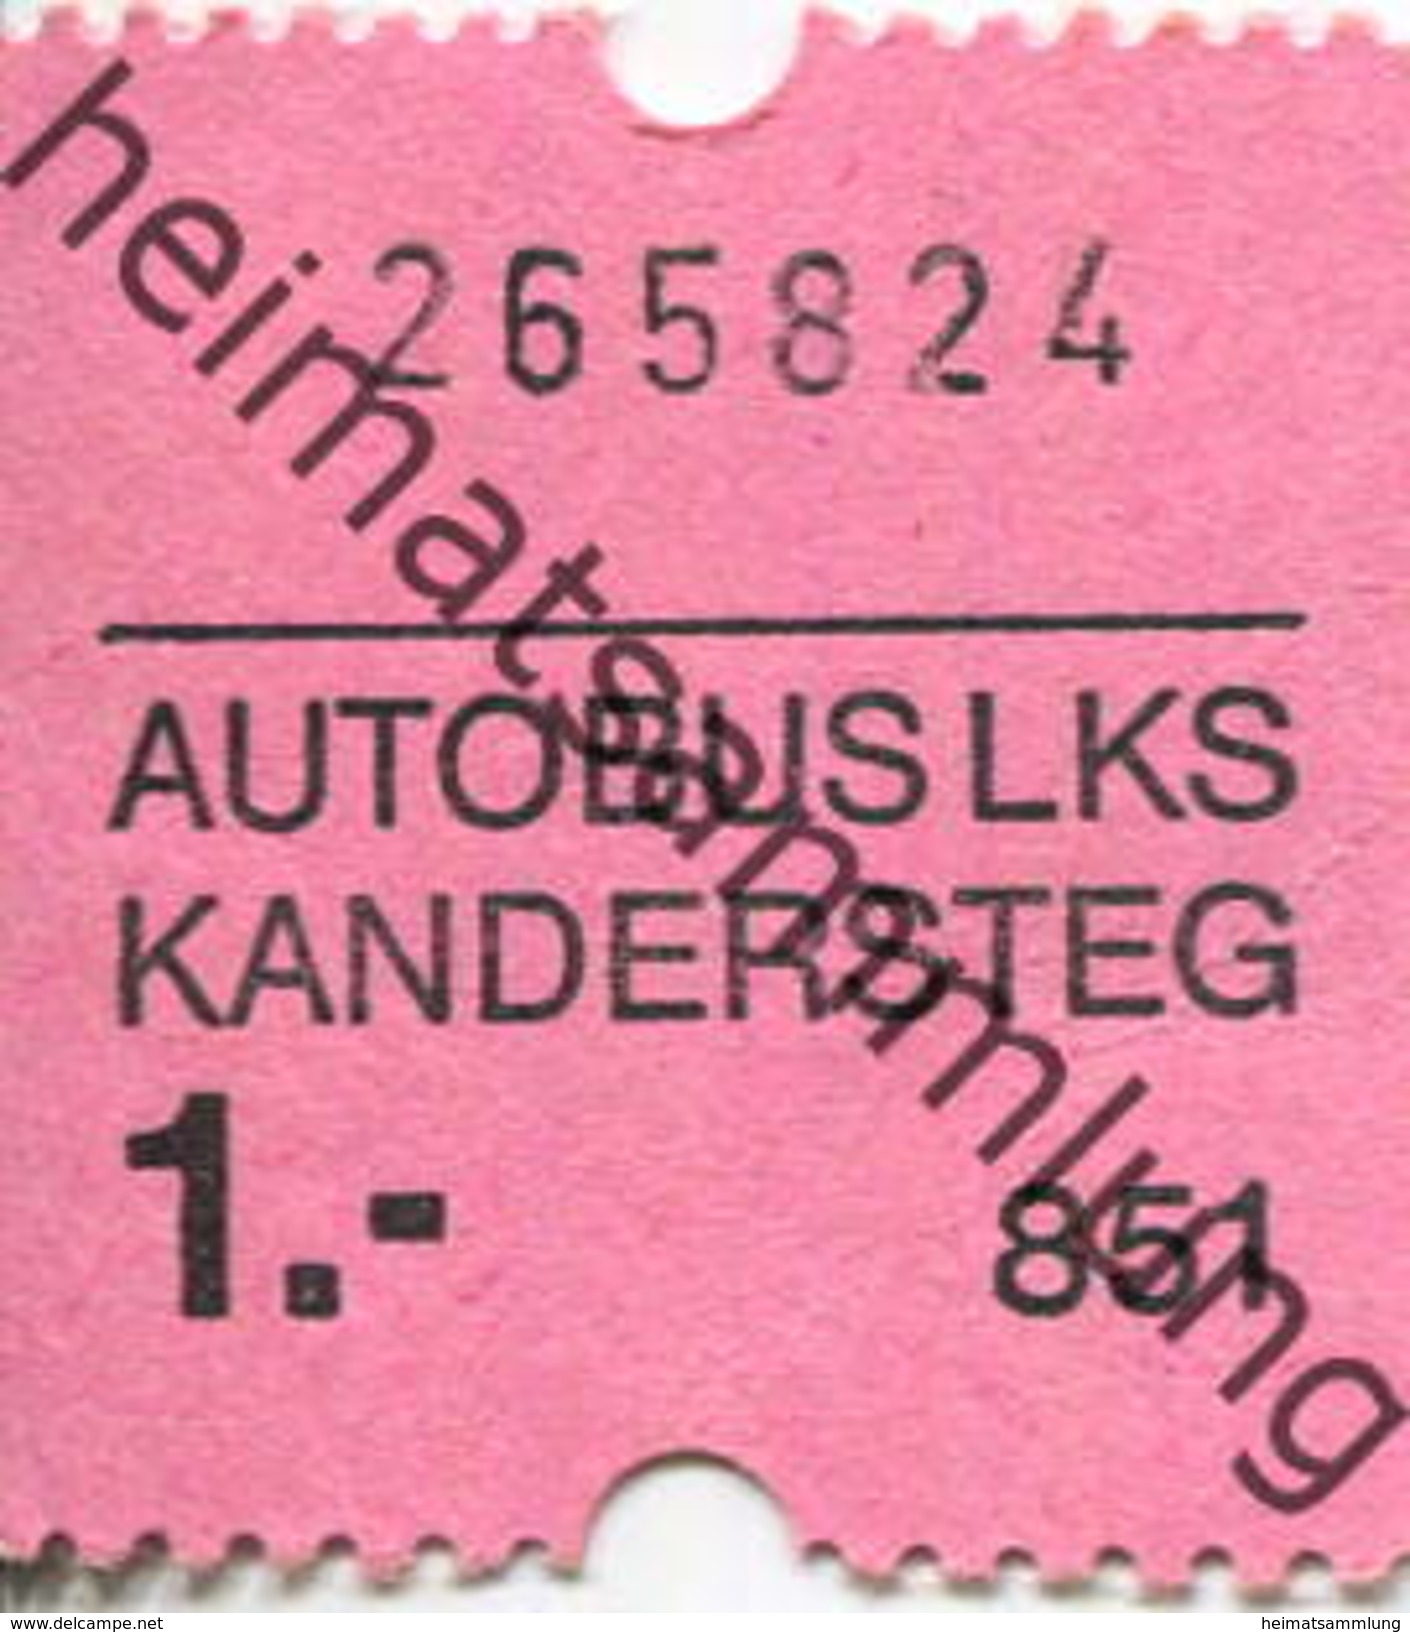 Schweiz - Autobus LKS Kandersteg - Fahrschein 1.- - Europe